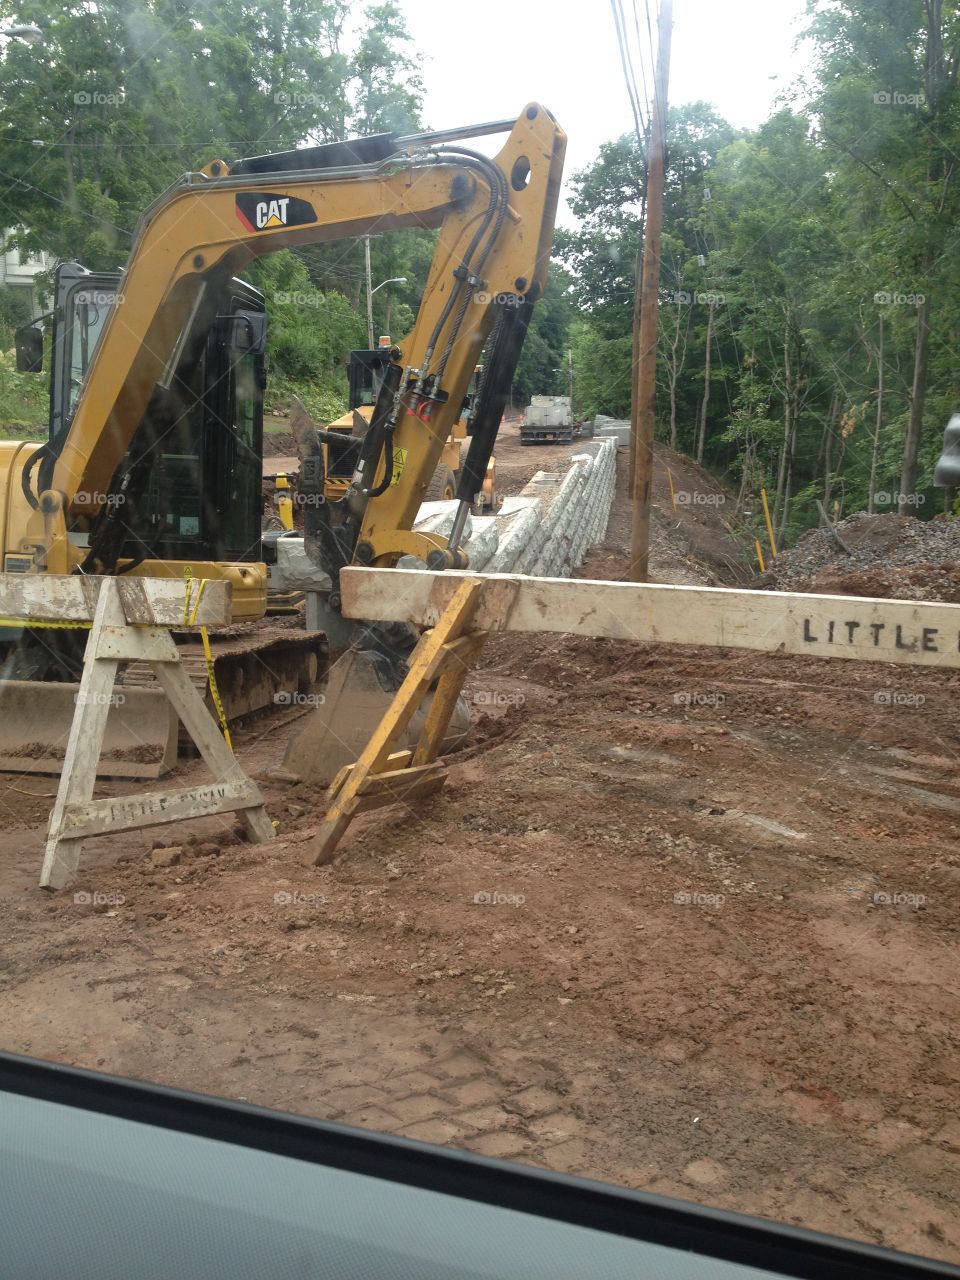 Construction site, backhoe.
